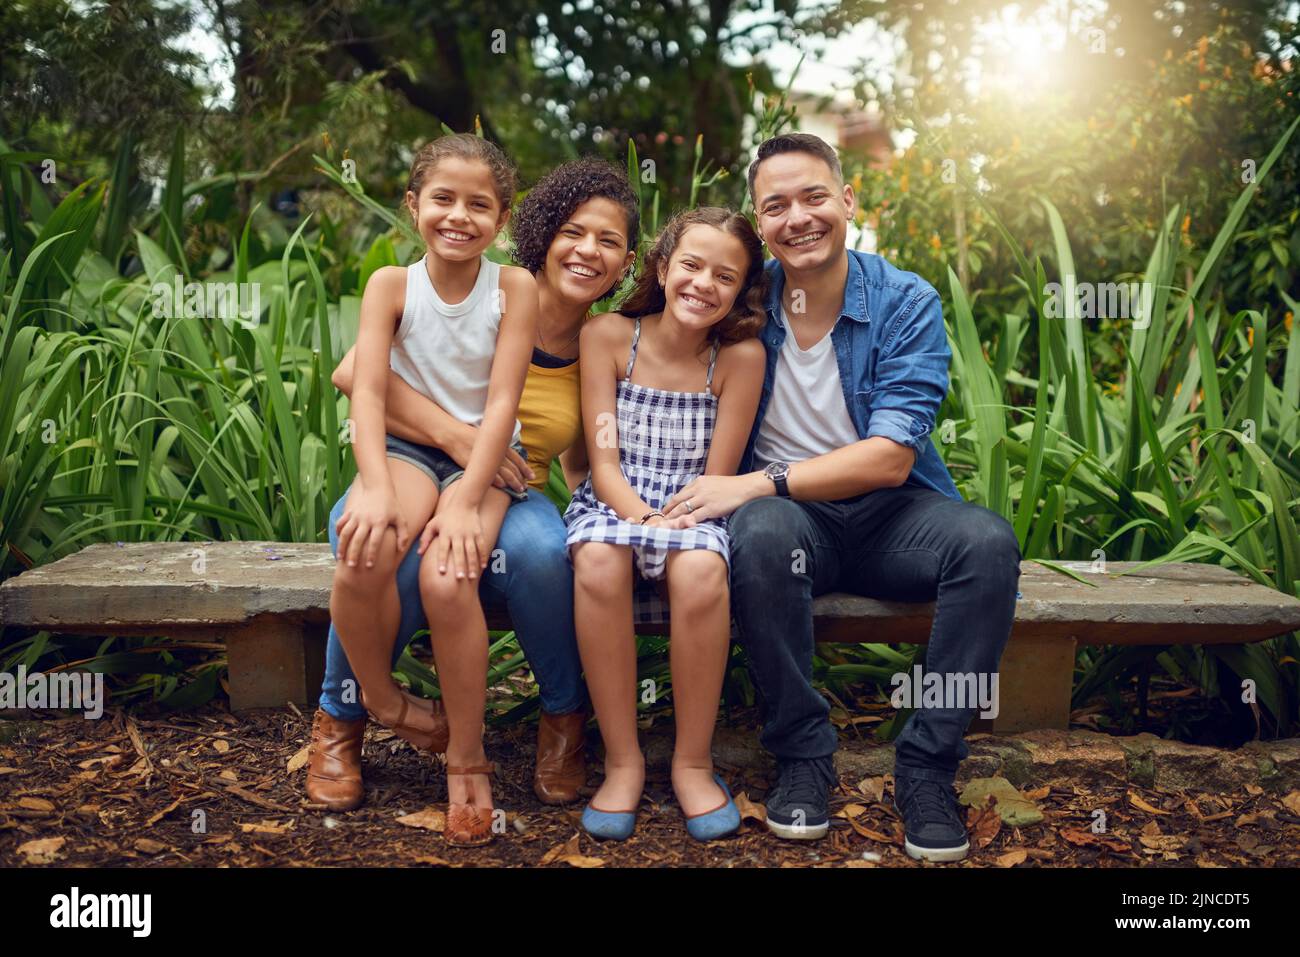 La famiglia è la cosa più vera della vita. Ritratto completo di una famiglia felice che trascorre un po' di tempo insieme su una panchina del parco. Foto Stock